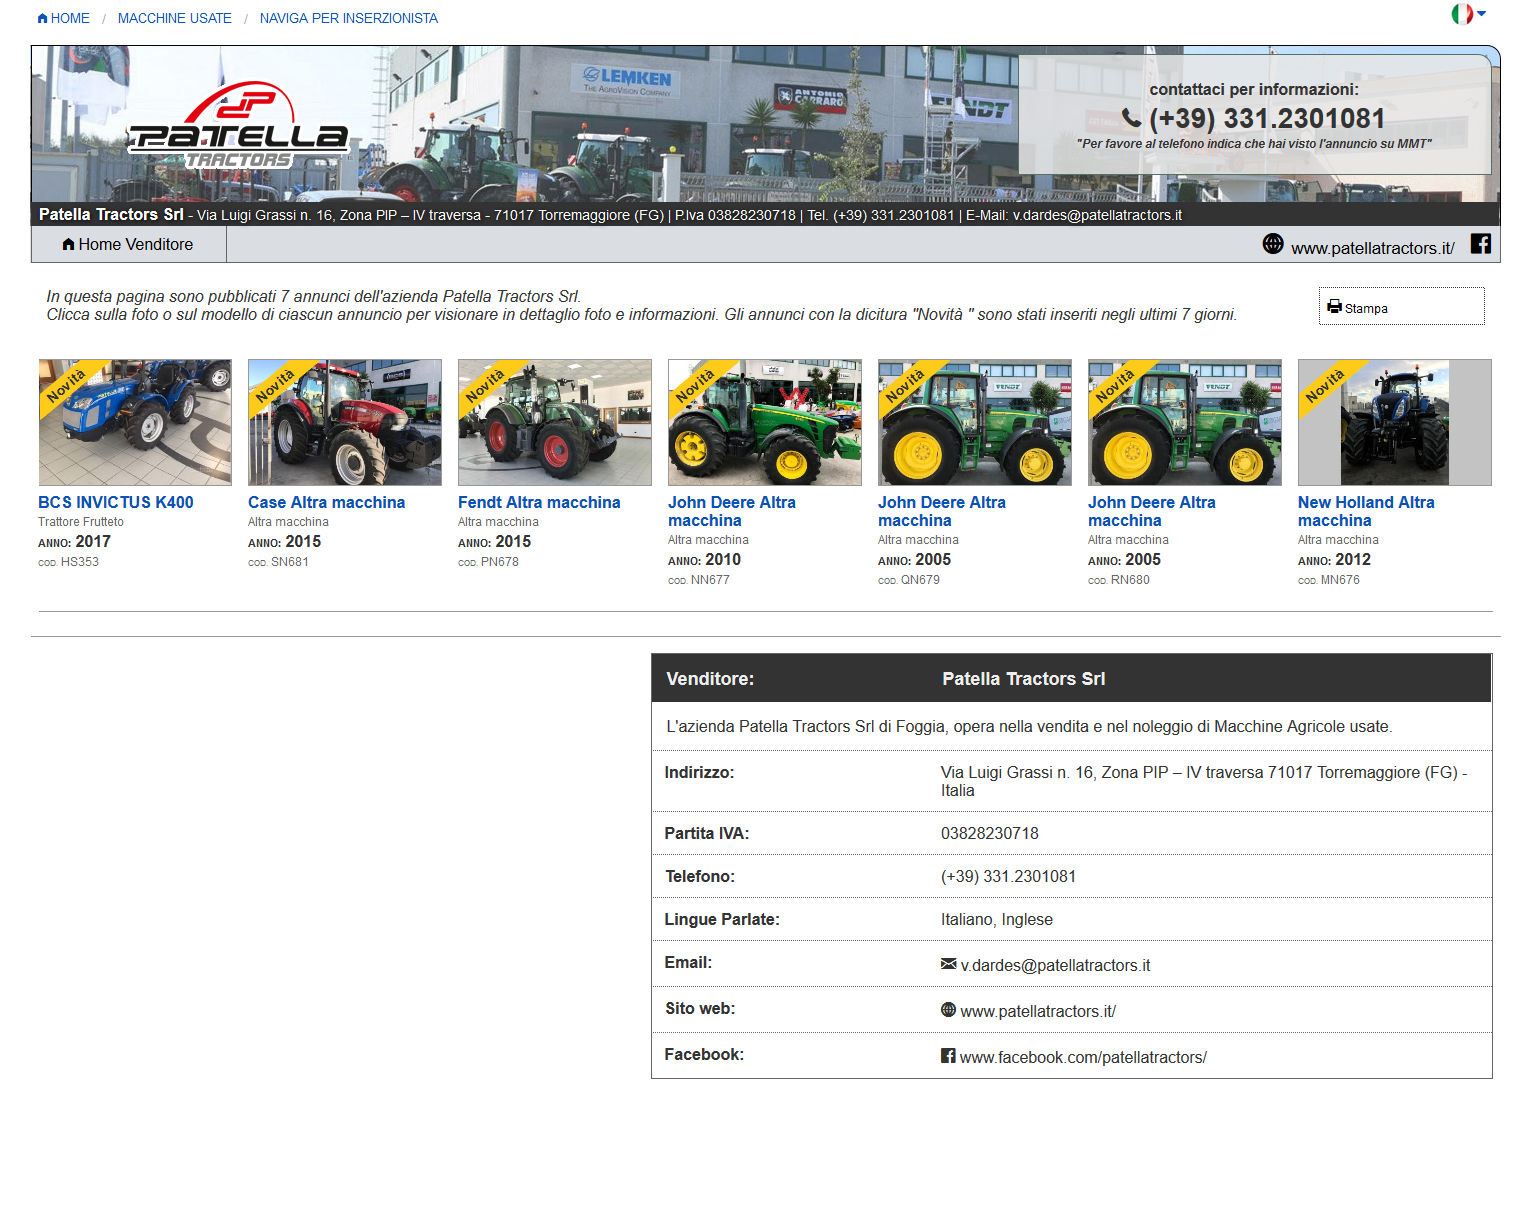 Patella Tractors Srl - Annunci di usato in vendita